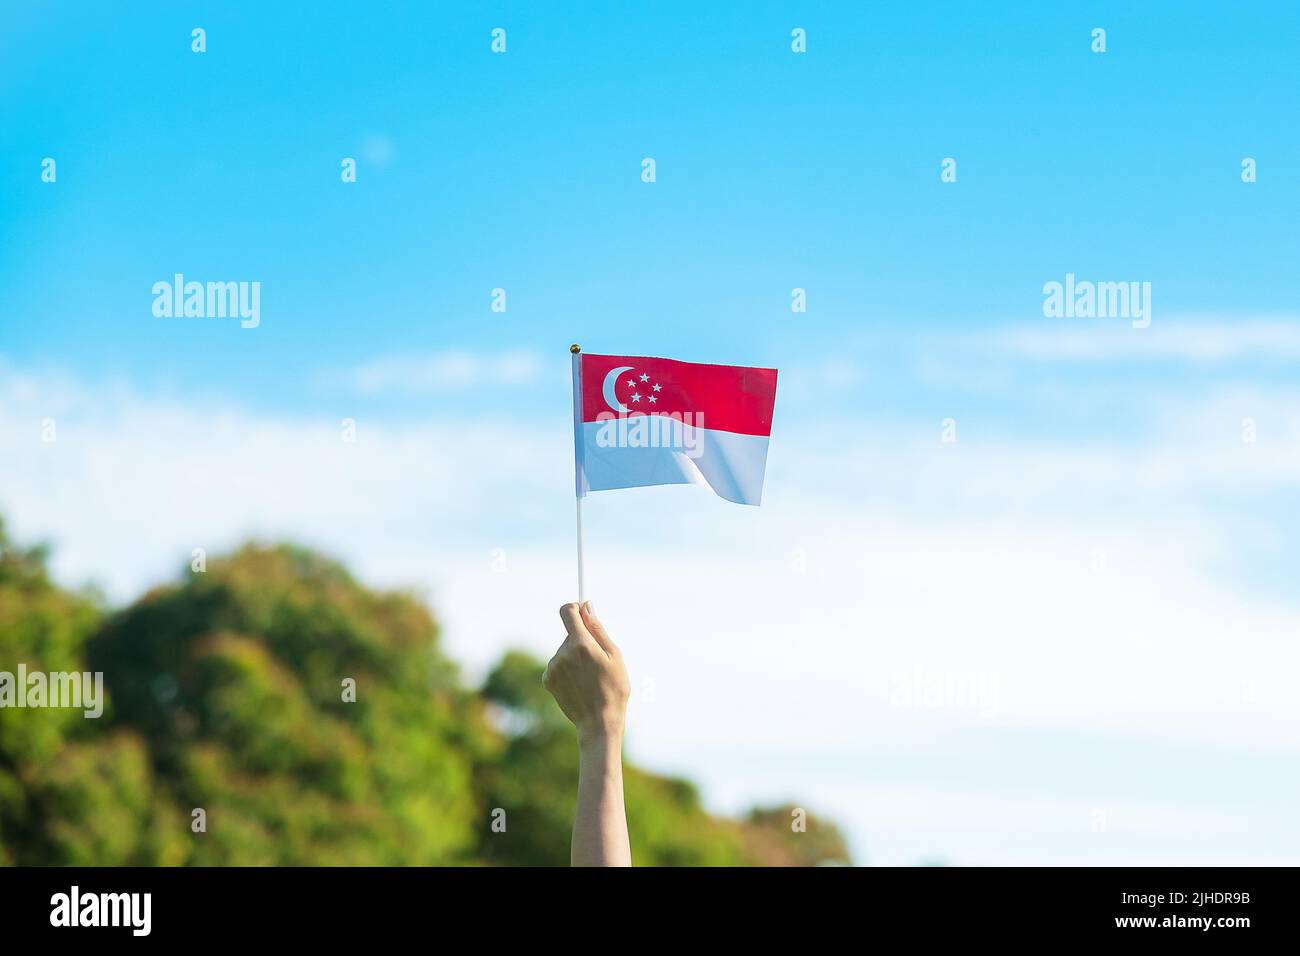 Mano che tiene la bandiera di Singapore su sfondo blu cielo. Singapore National Day e buone celebrazioni Foto Stock